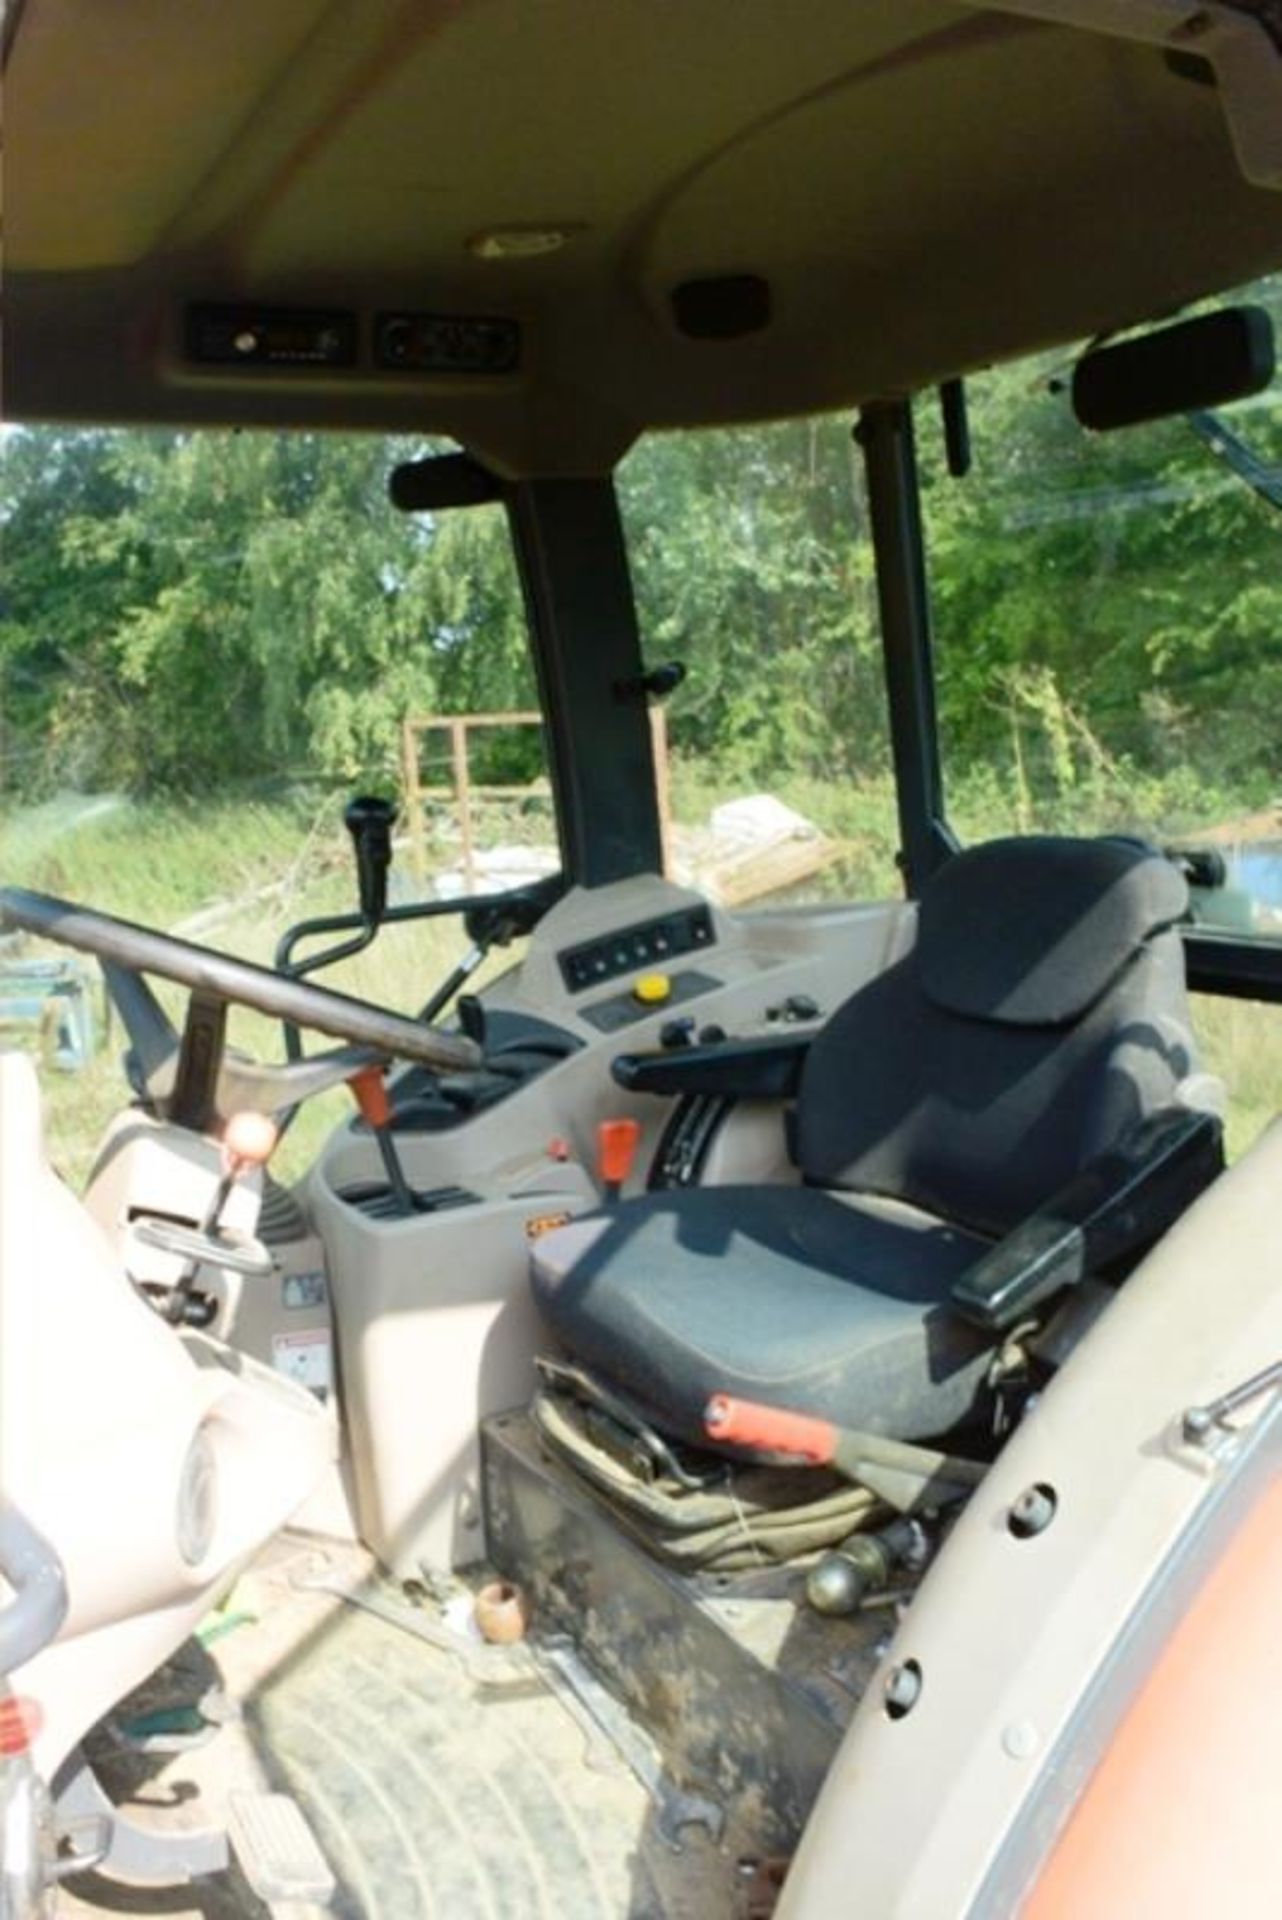 Kubota M6060 60 hp tractor, registration OY63 LBN (2013) with Kubota LA1154 front loader, Kubota - Image 13 of 22